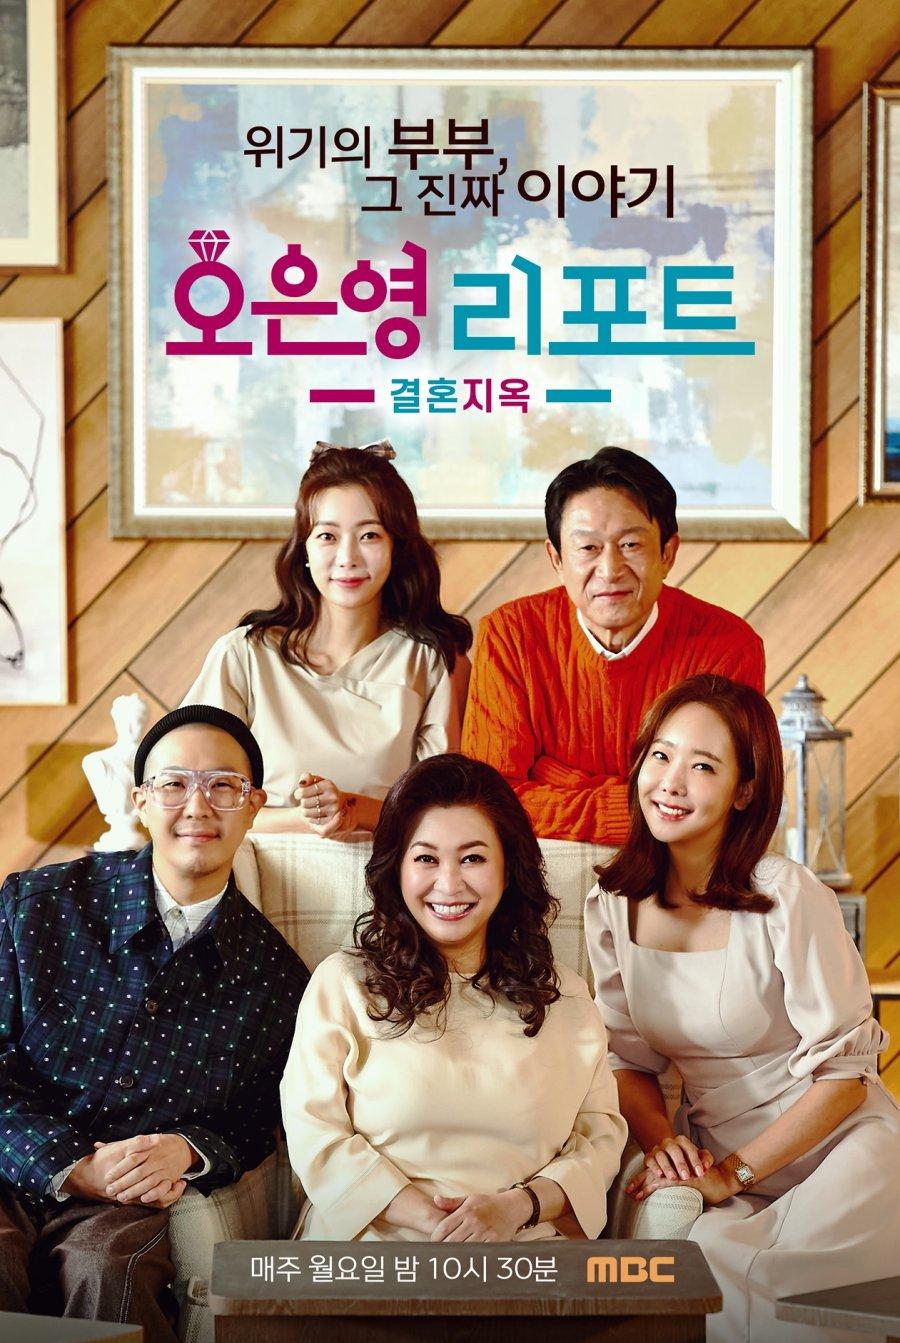 Chương trình thực tế Oh Eun Young's Report Season 2: Marriage Hell. (Ảnh: Internet)